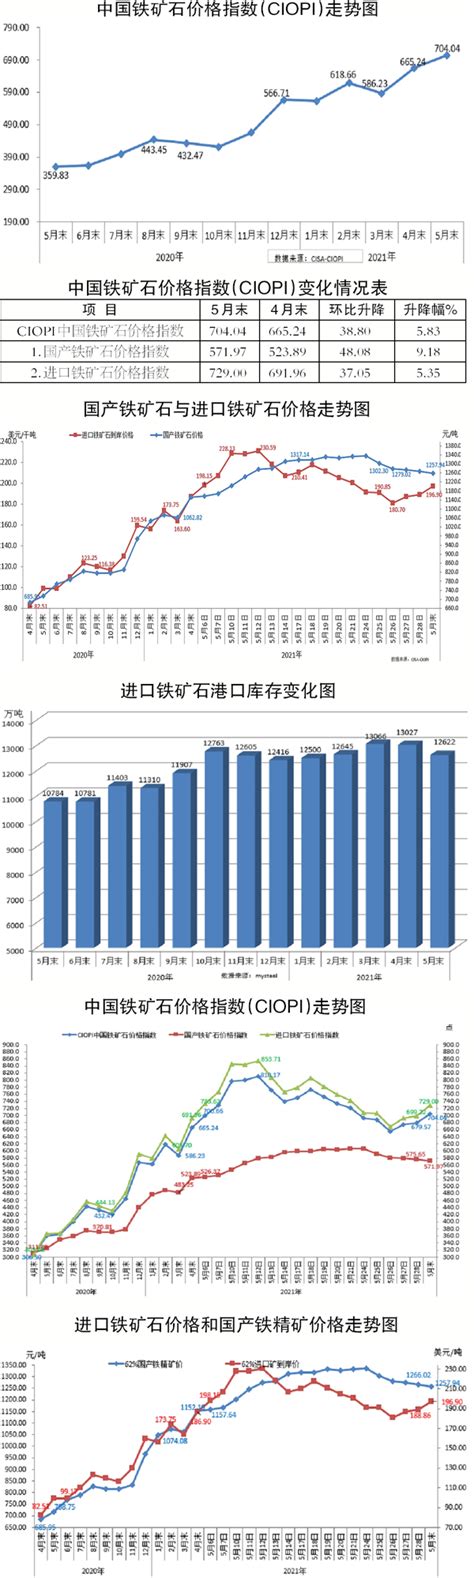 6月份中国铁矿石价格指数（CIOPI）继续上升—中国钢铁新闻网